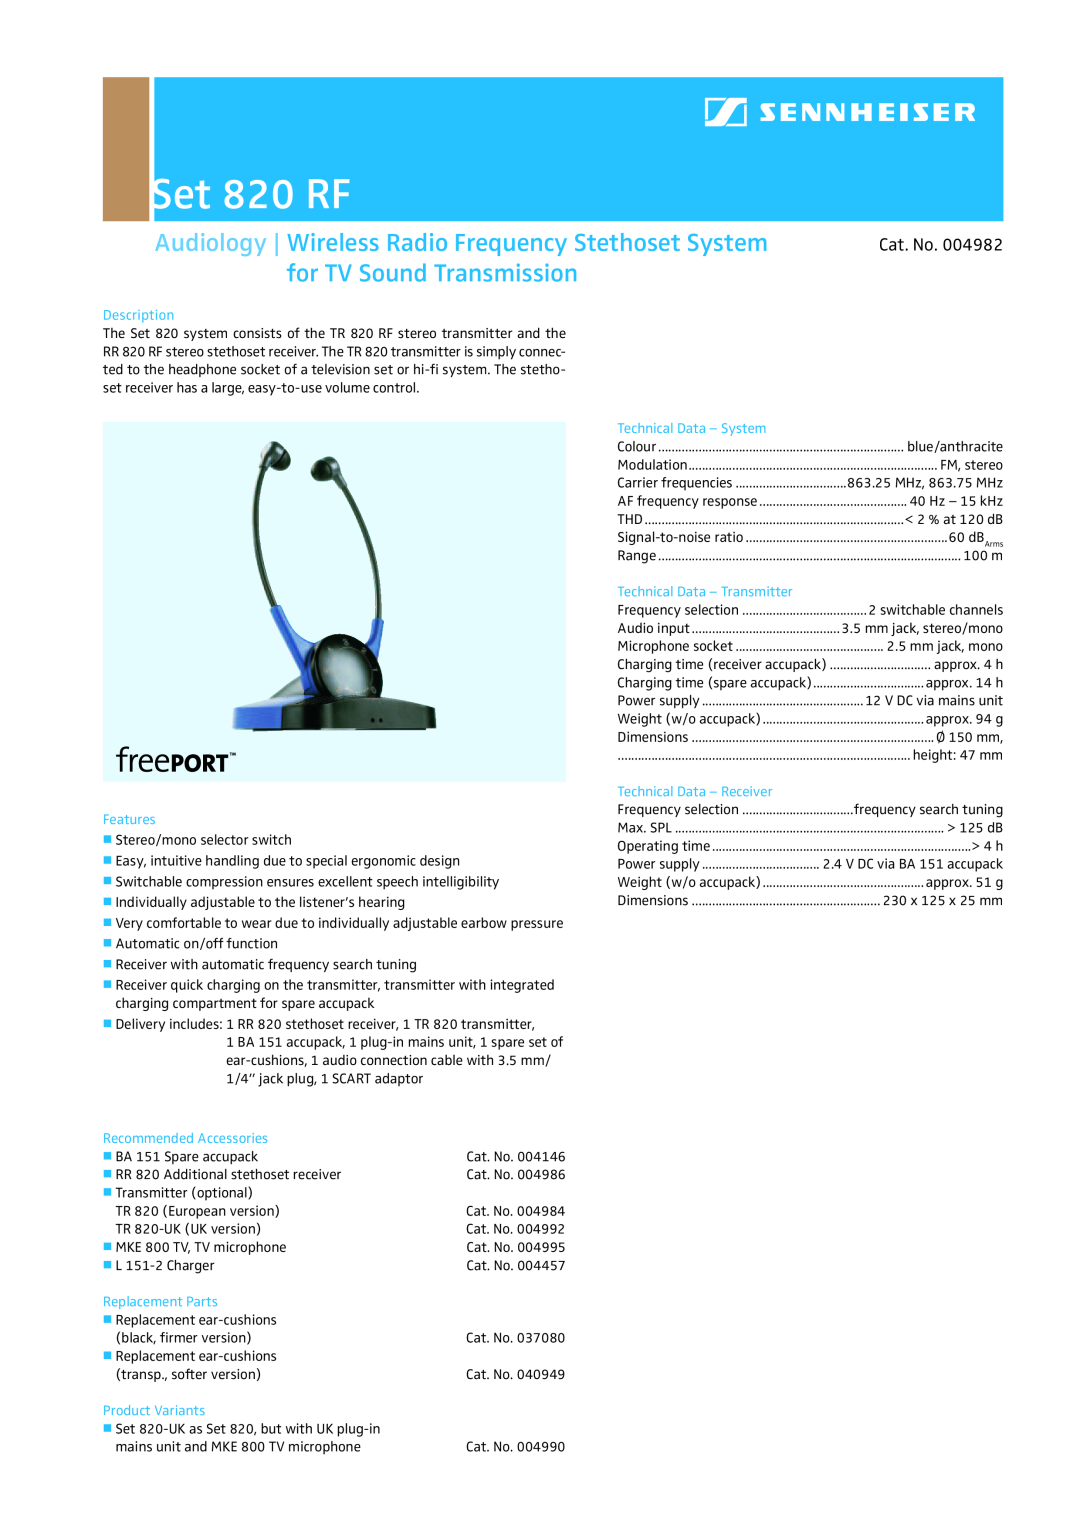 Sennheiser SET 820 RF dimensions Set 820 RF, for TV Sound Transmission, Cat. No, Description, Features, Replacement Parts 